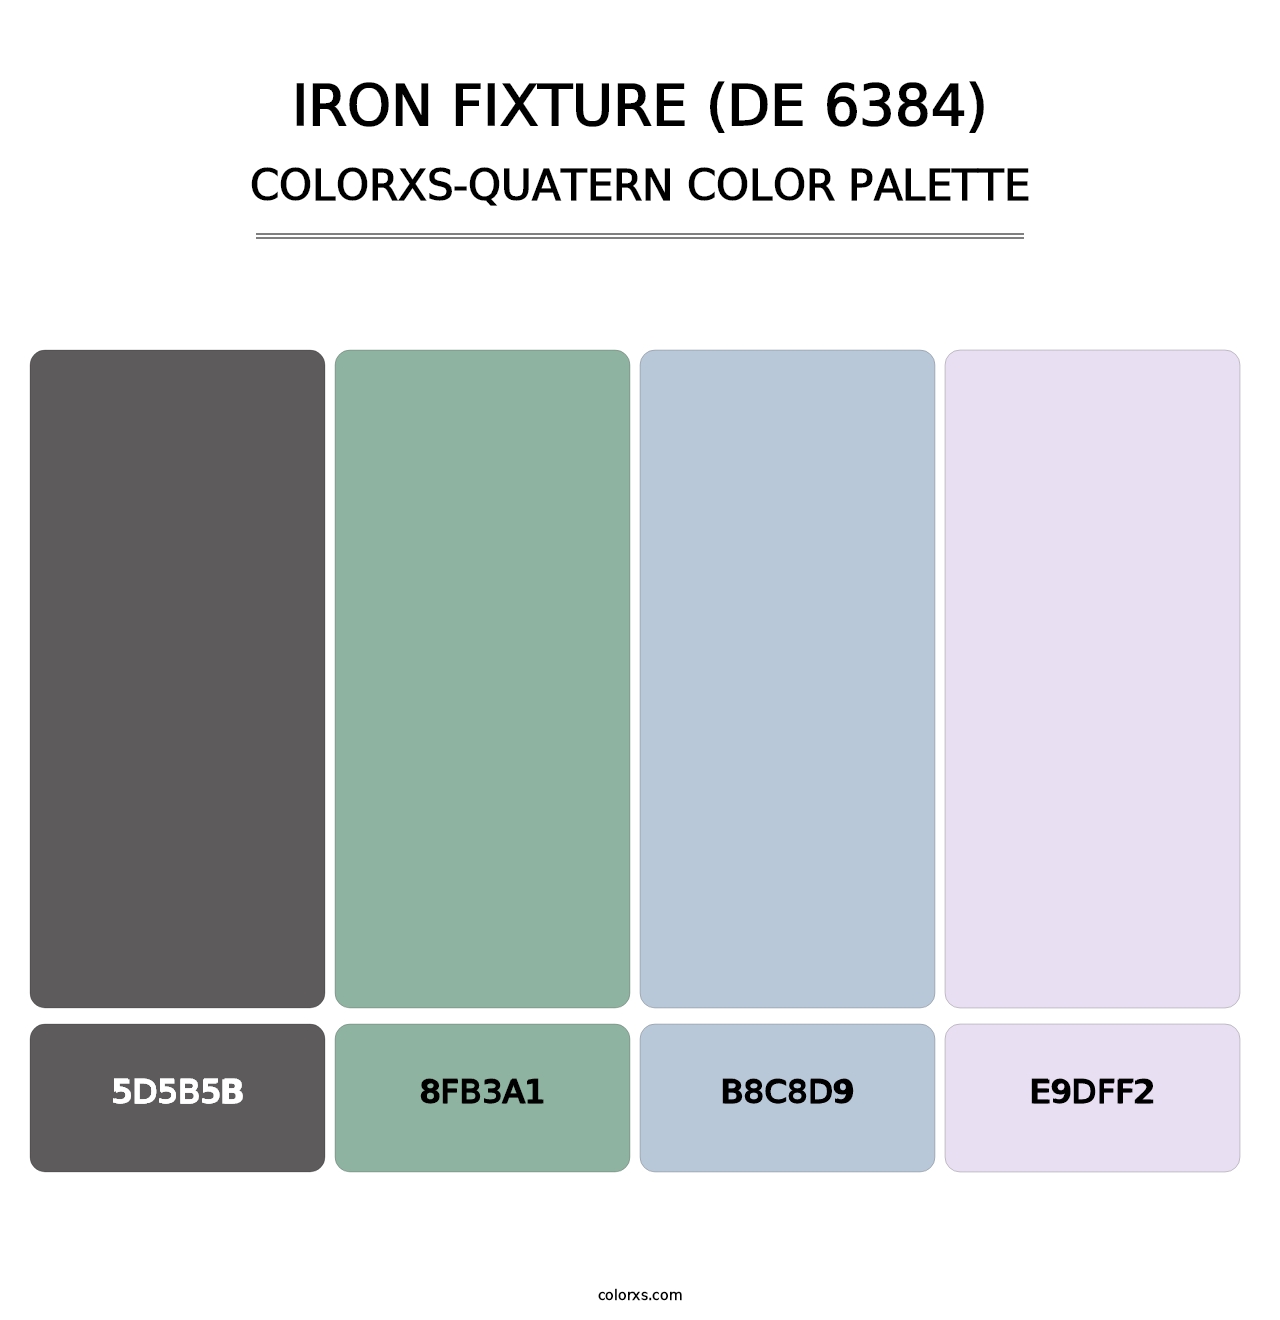 Iron Fixture (DE 6384) - Colorxs Quatern Palette